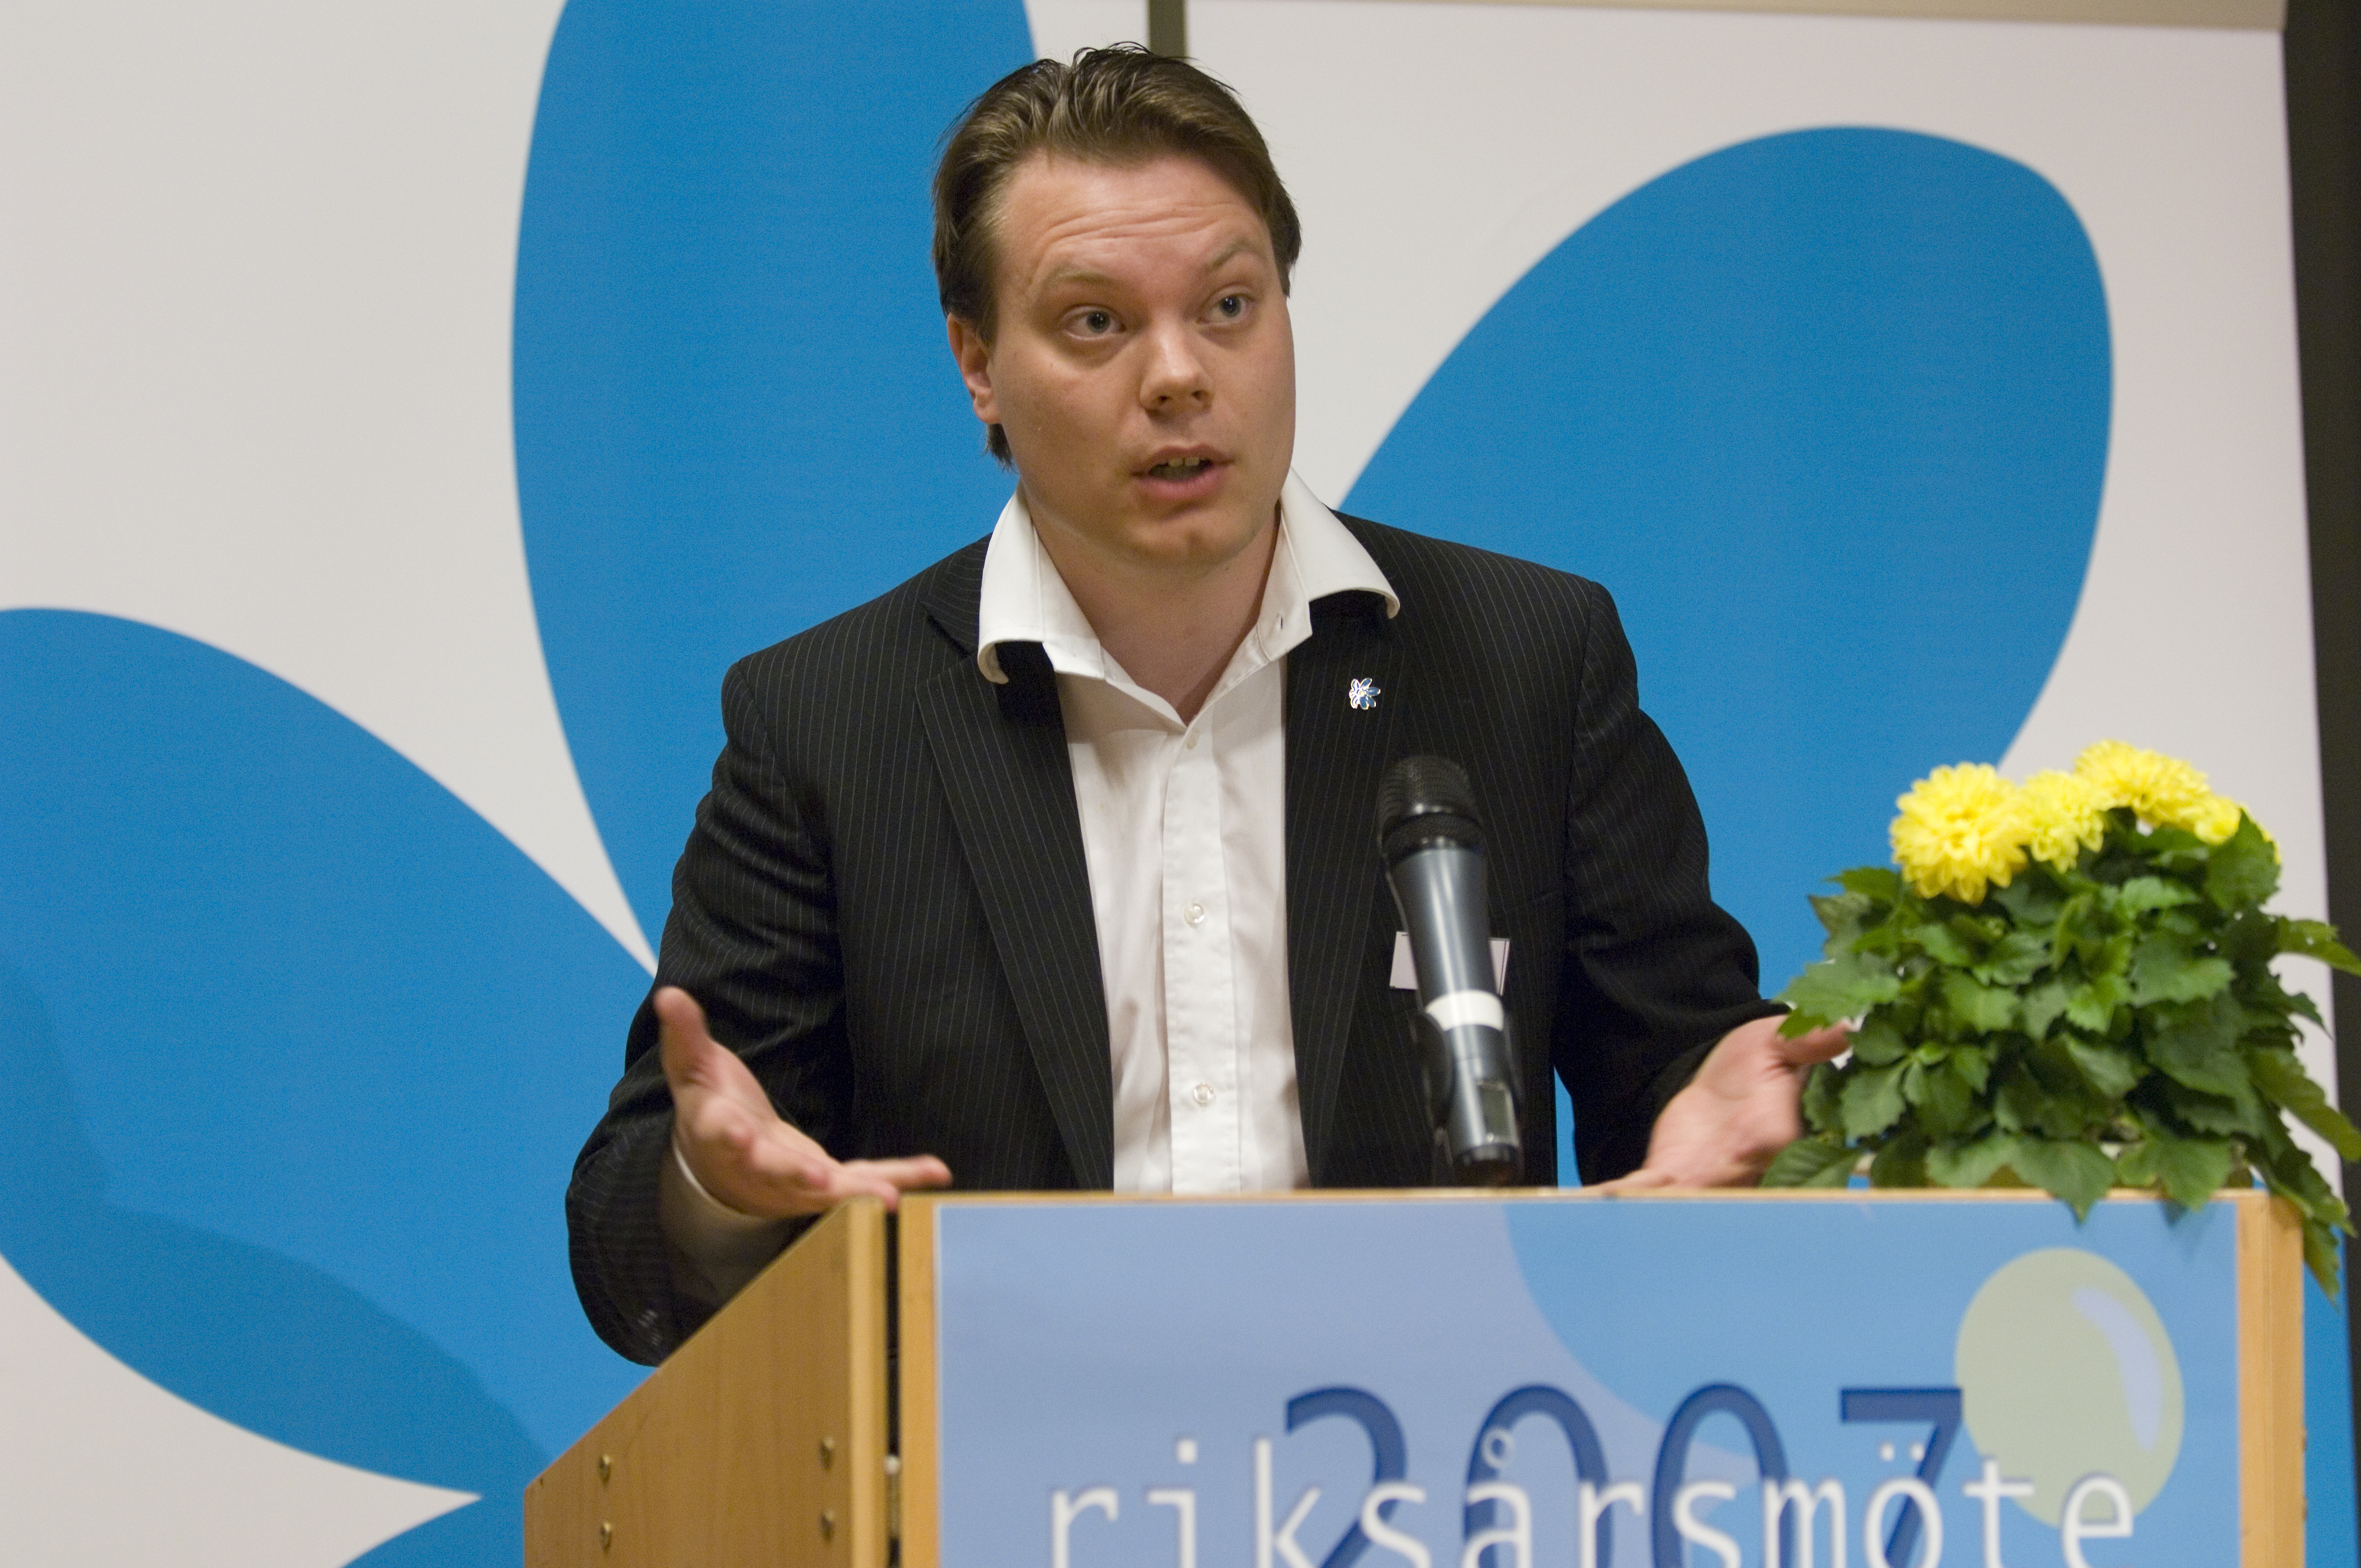 Sverigedemokraterna, Hot, Internet, Twitter, Brott och straff, Sebastian Stakset, Kartellen, Polisen